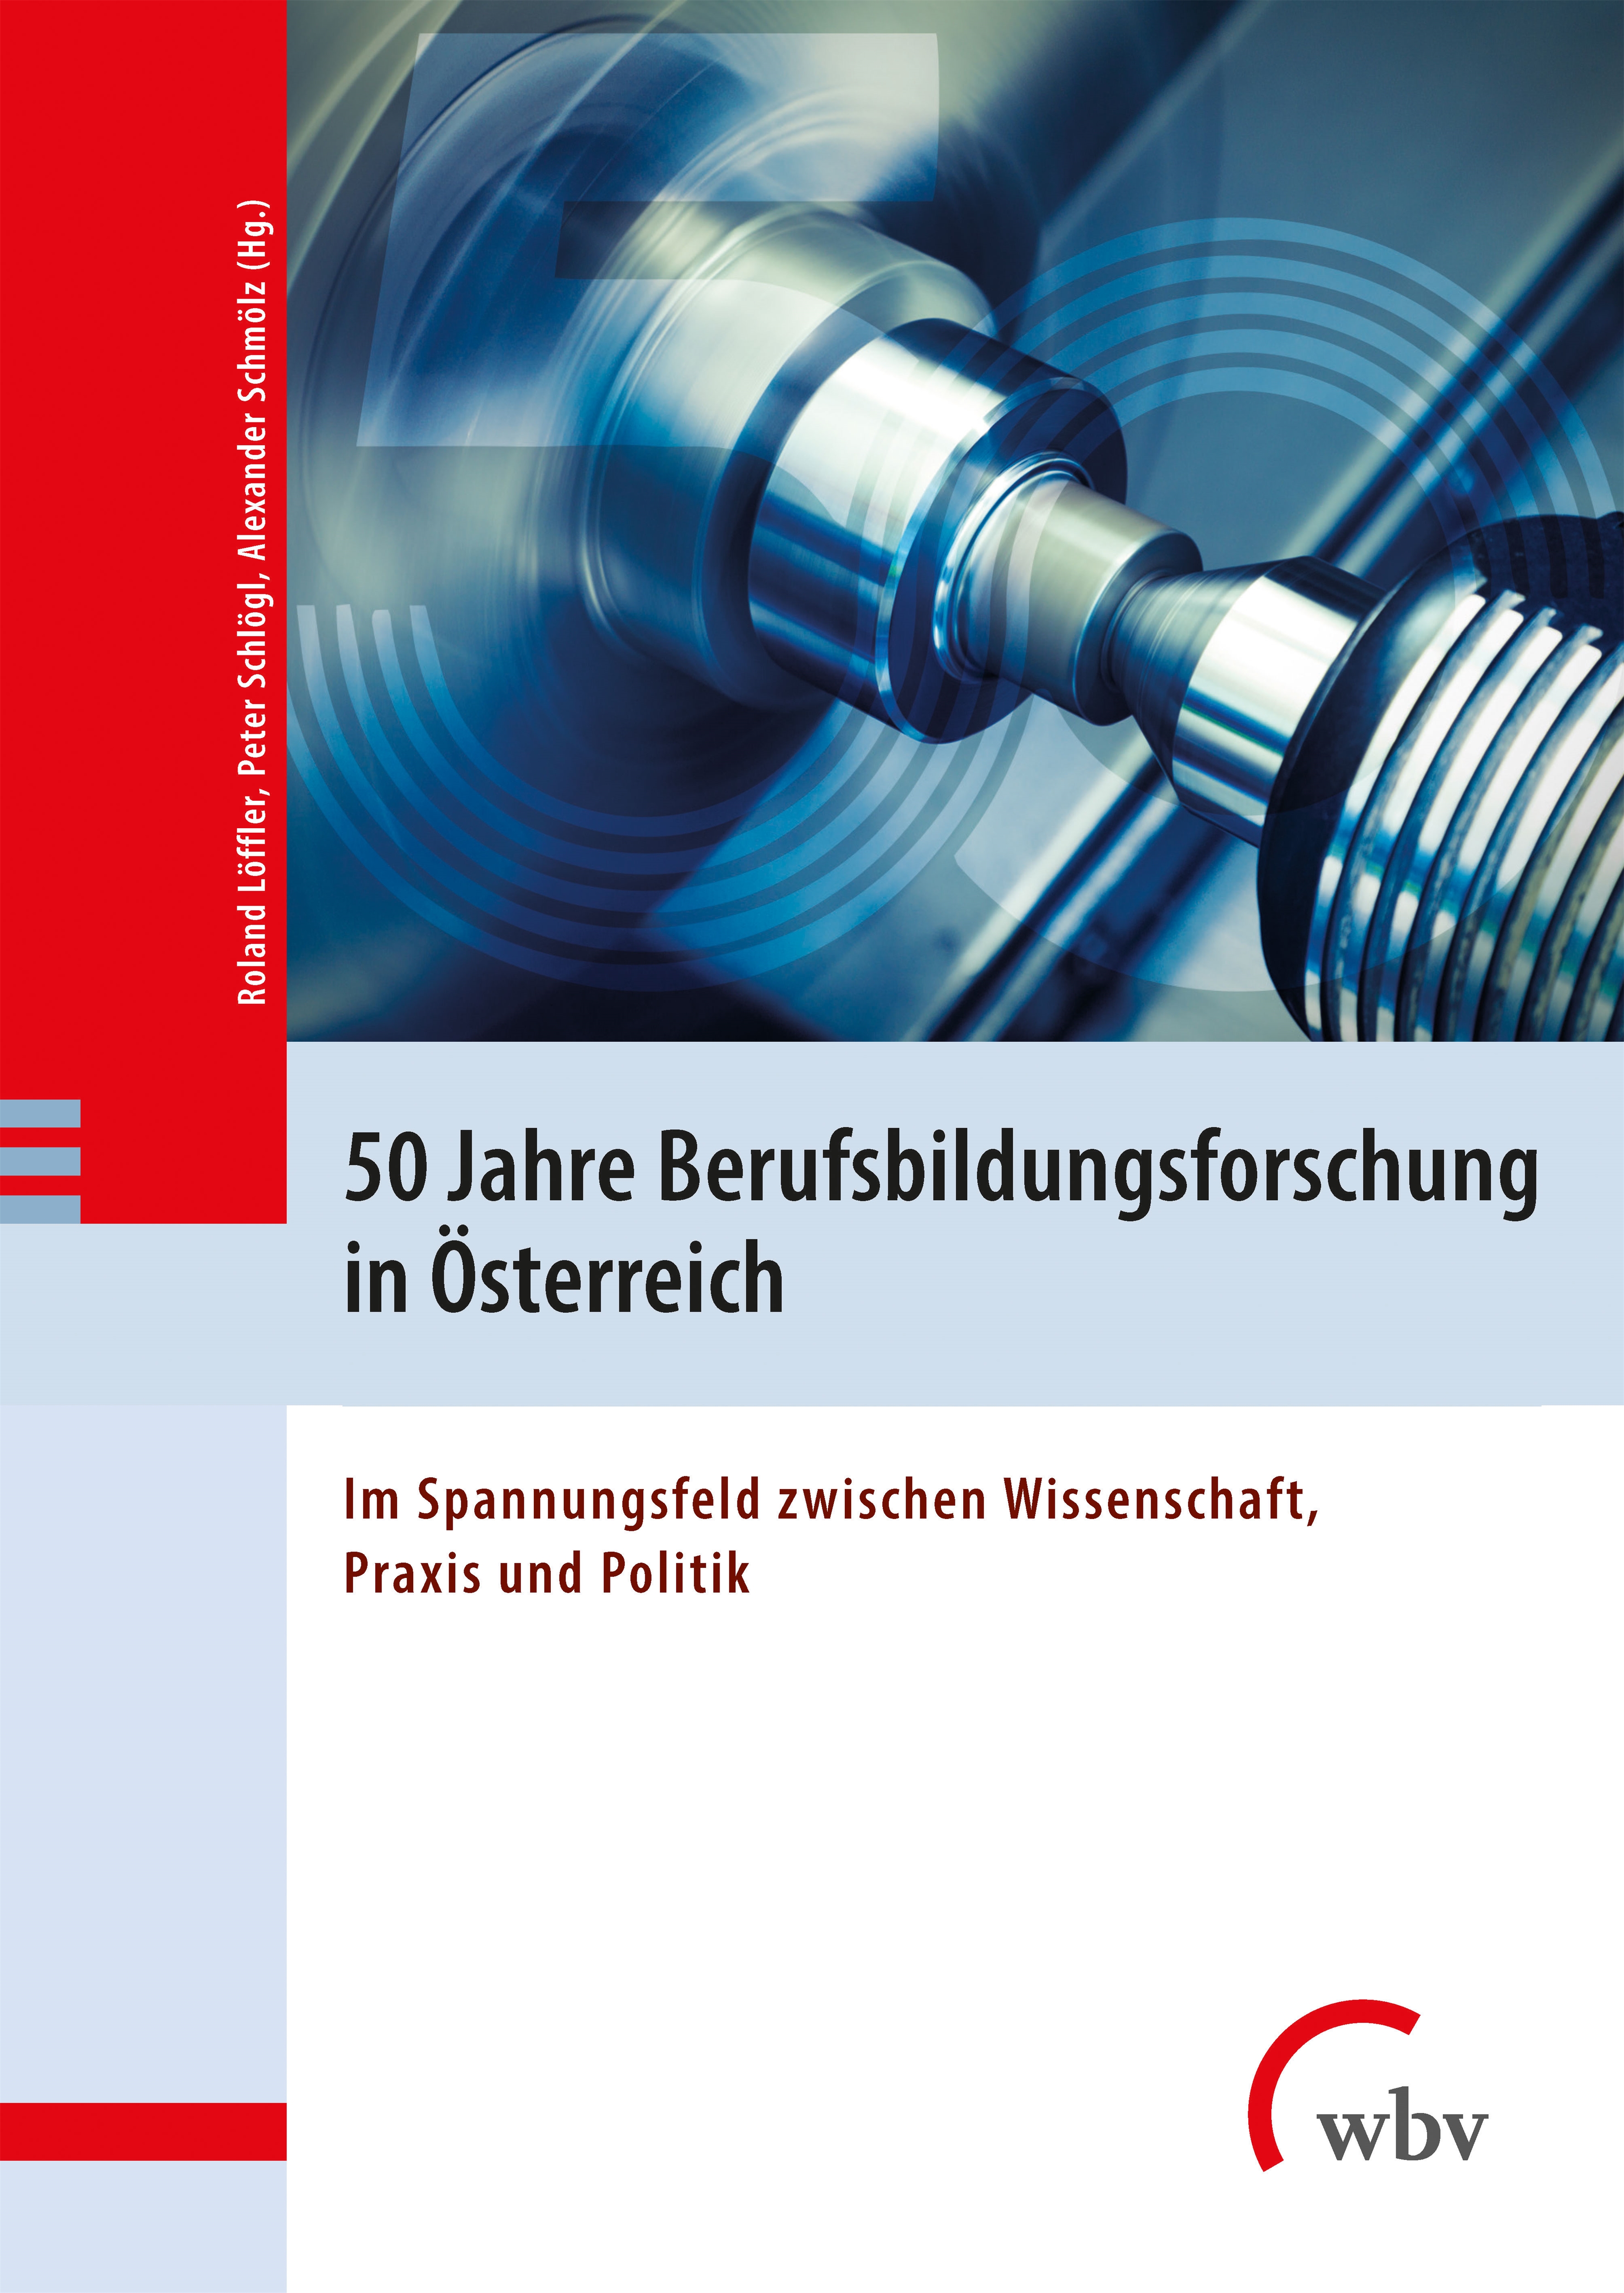 50 Jahre Berufsbildungsforschung in Österreich